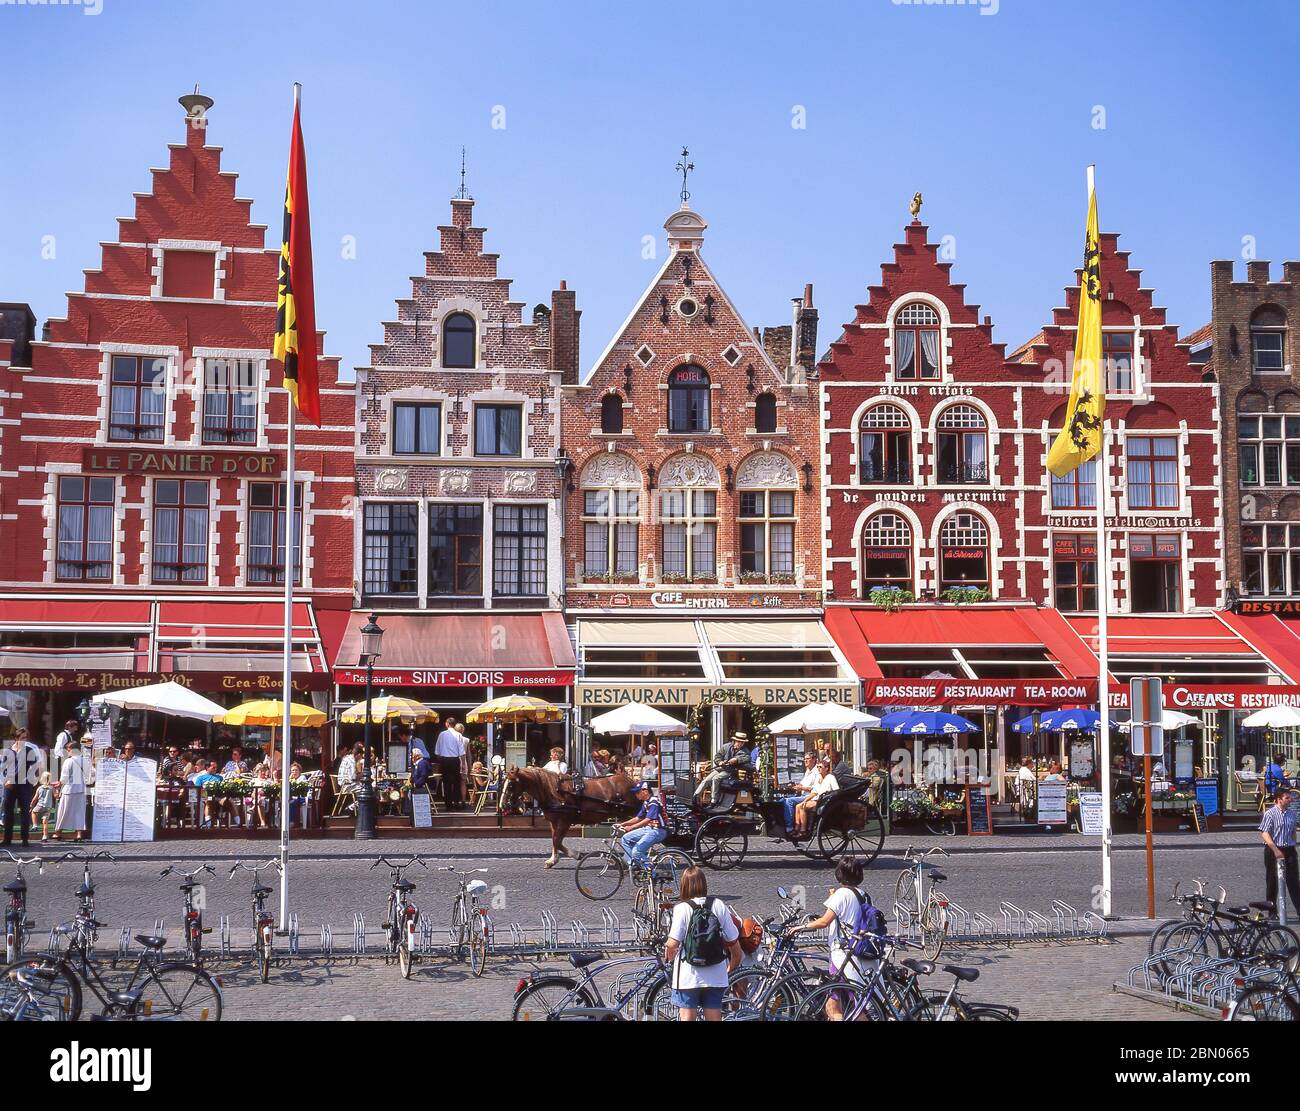 Place du marché (Markt), Bruges (Brugge), province de Flandre Occidentale, Royaume de Belgique Banque D'Images